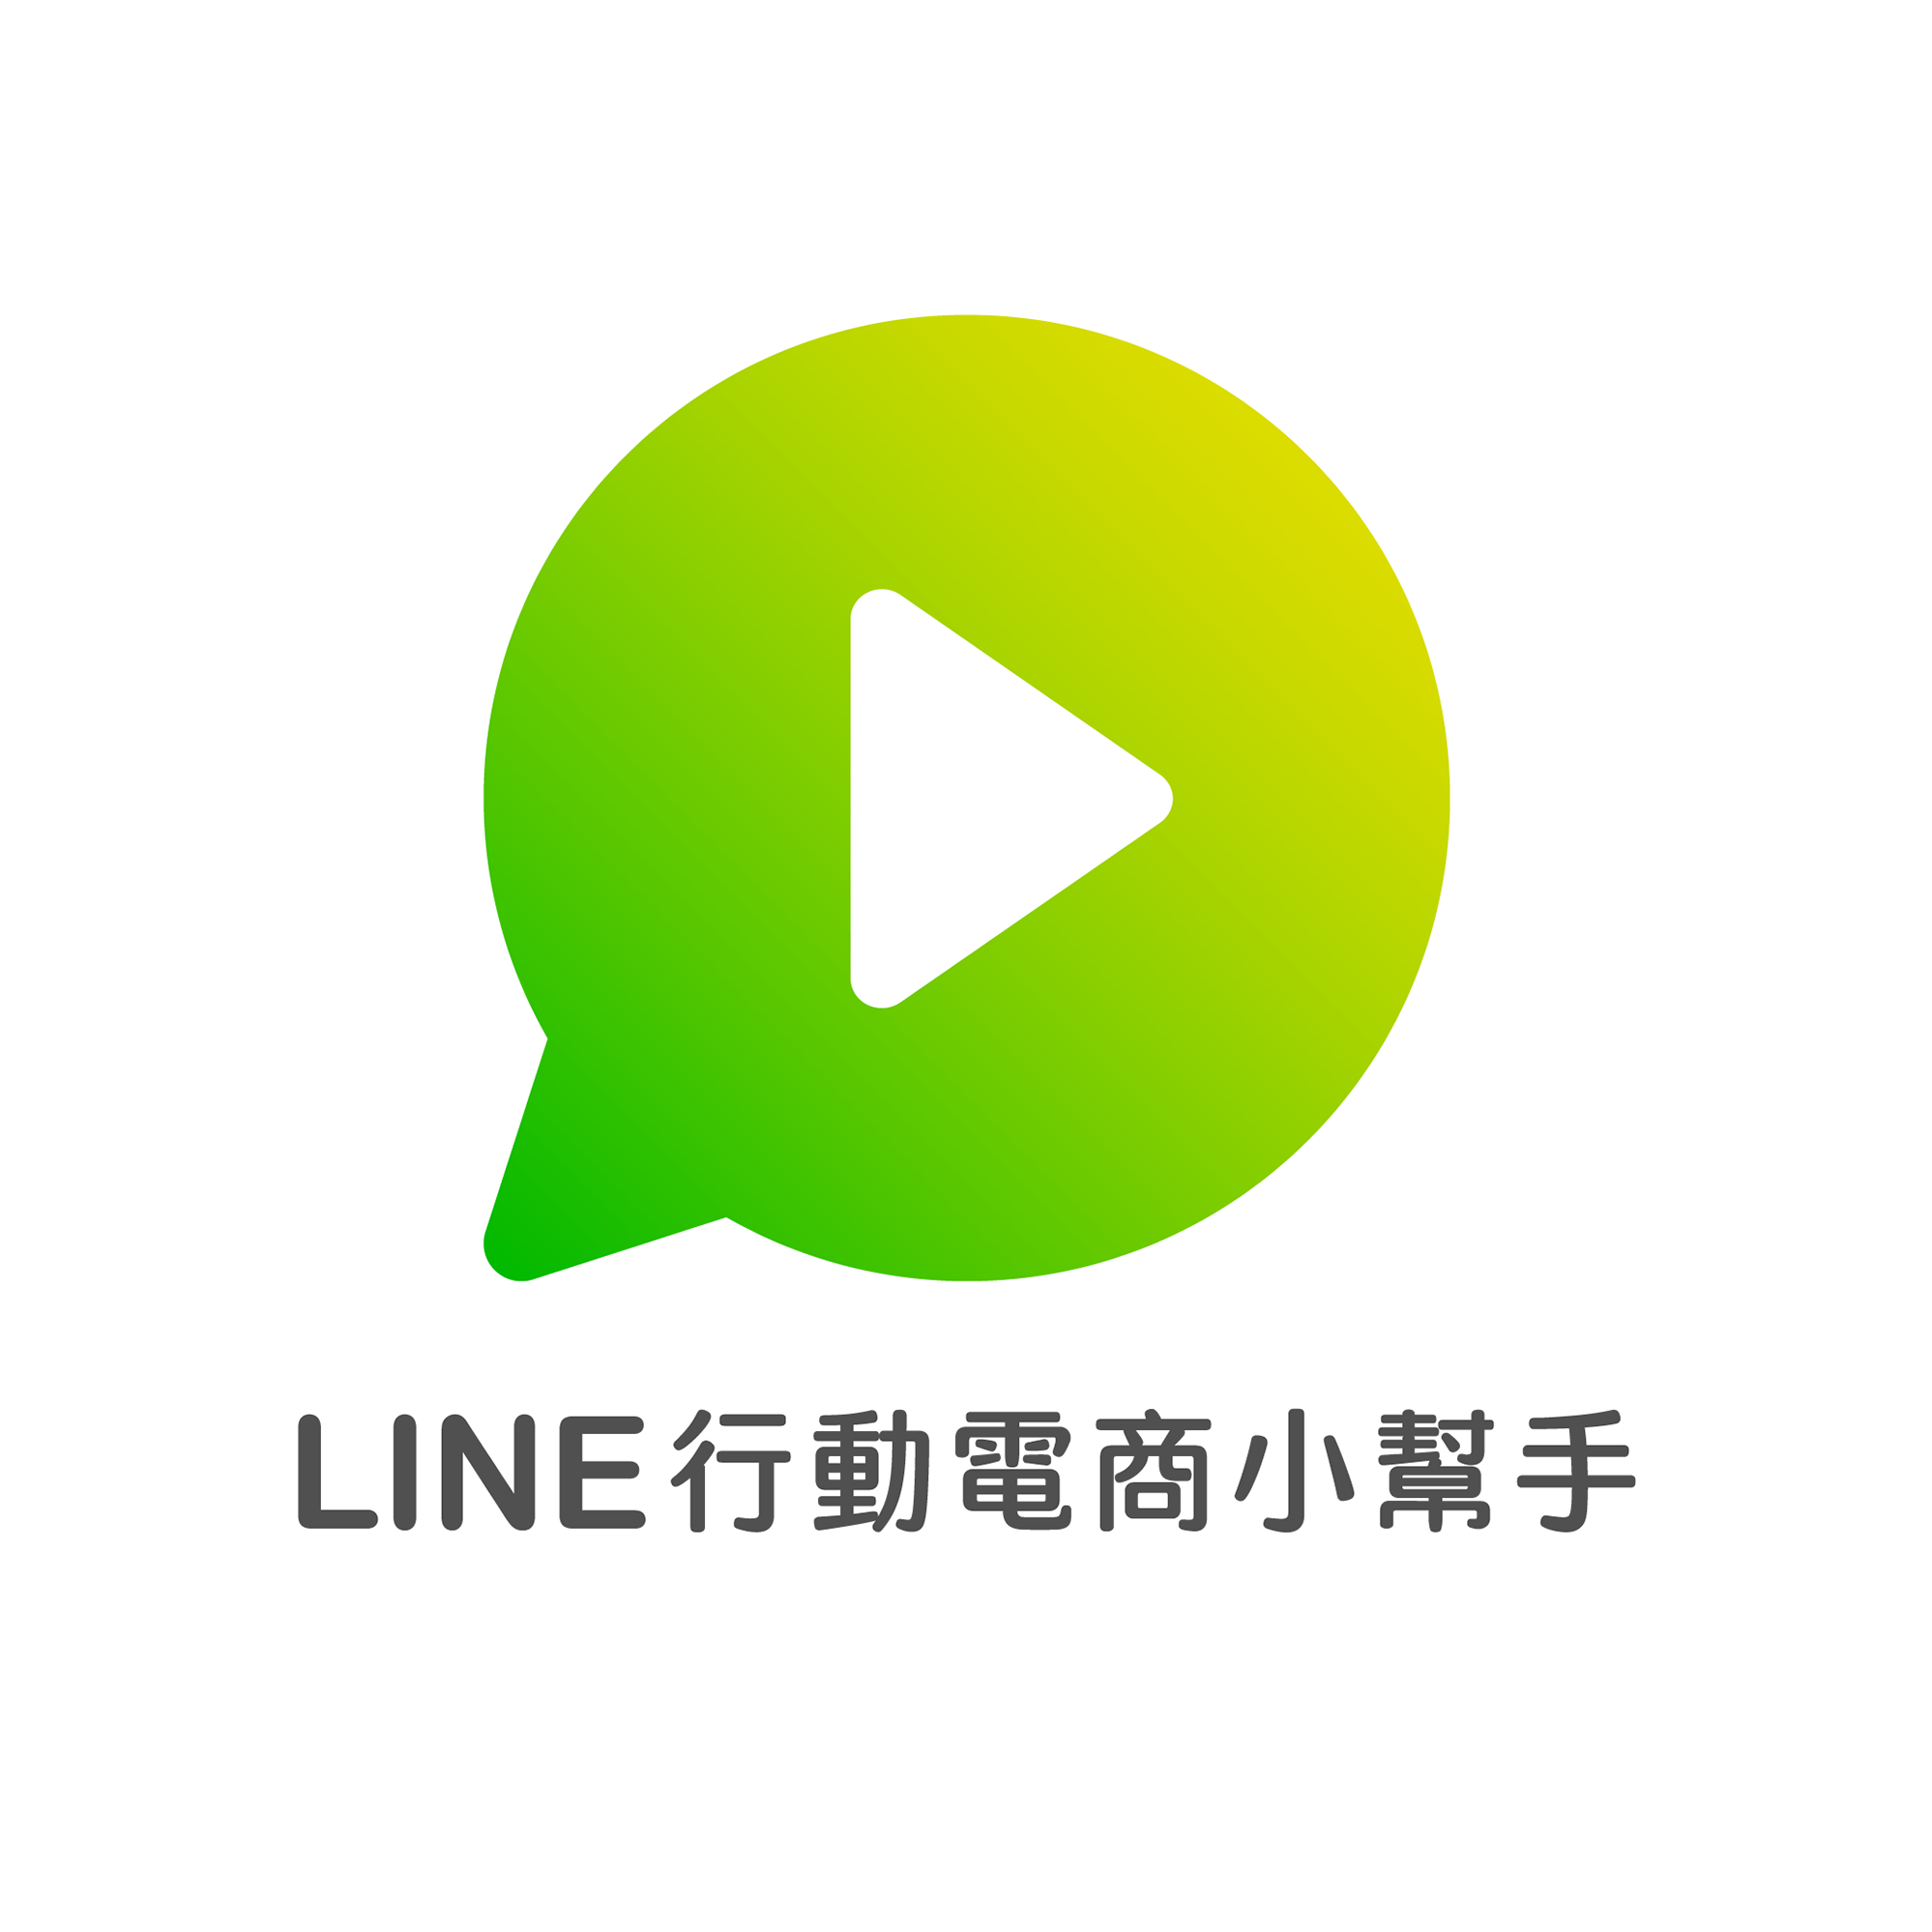 LINE團購平台